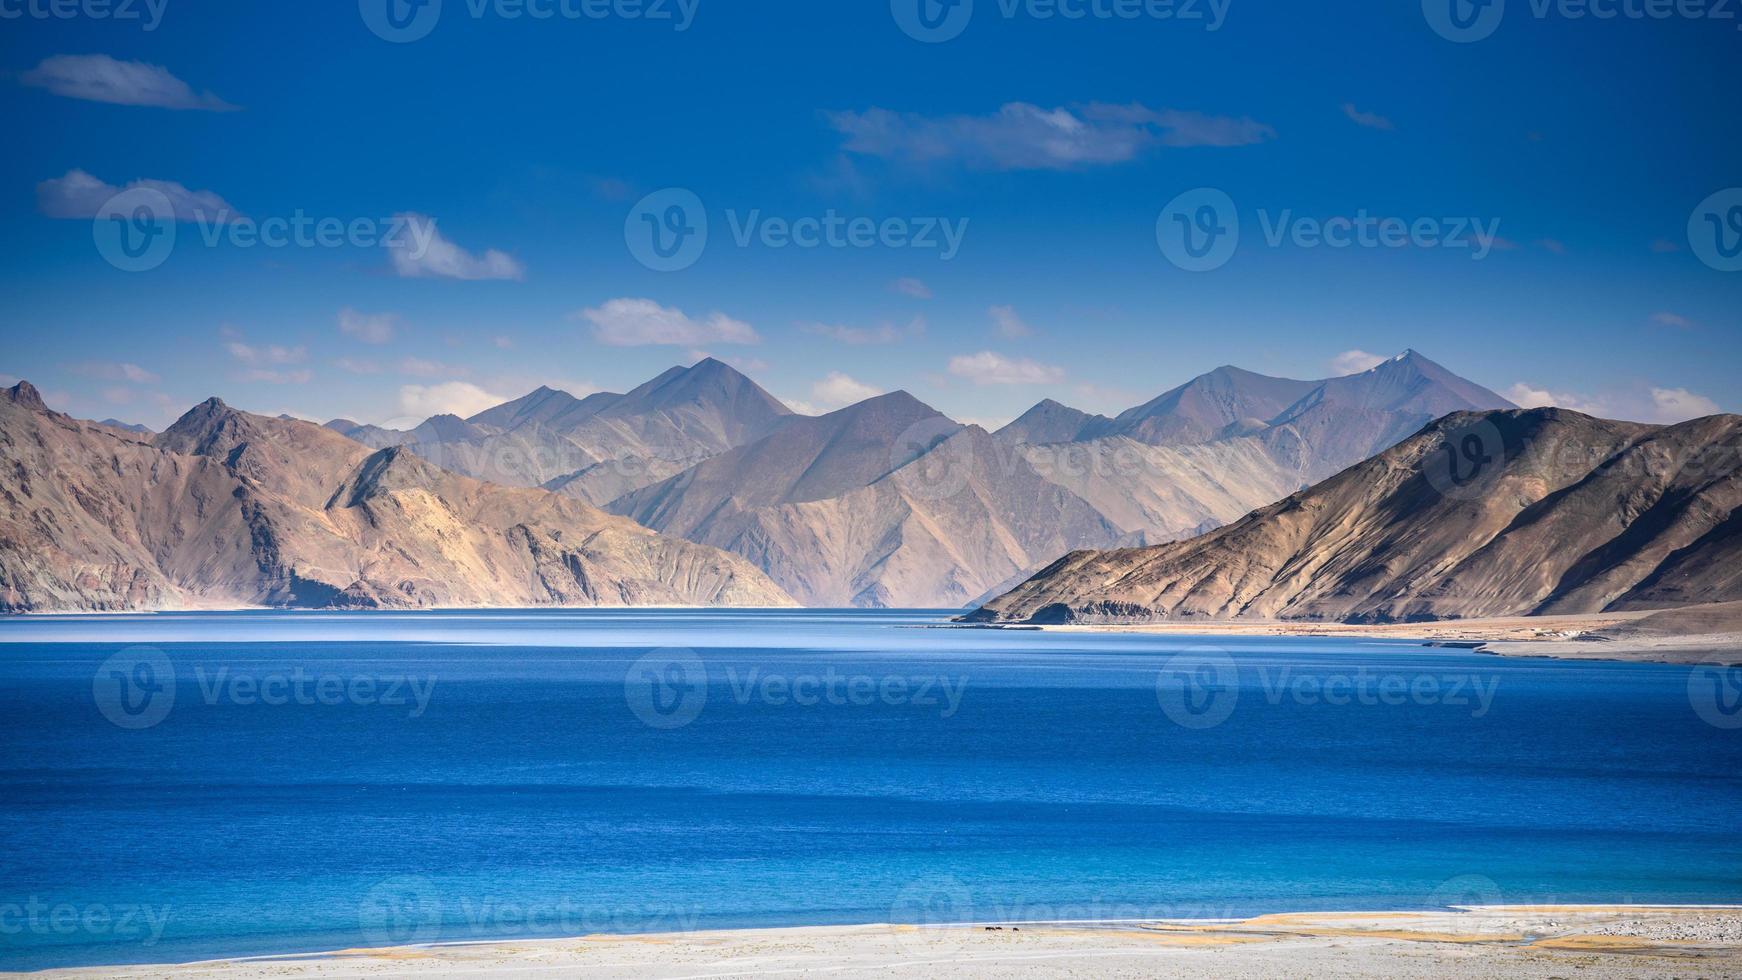 lago pangong em ladakh, norte da índia. pangong tso é um lago endorreico no Himalaia situado a uma altura de cerca de 4.350 m. tem 134 km de extensão e se estende da Índia ao Tibete foto